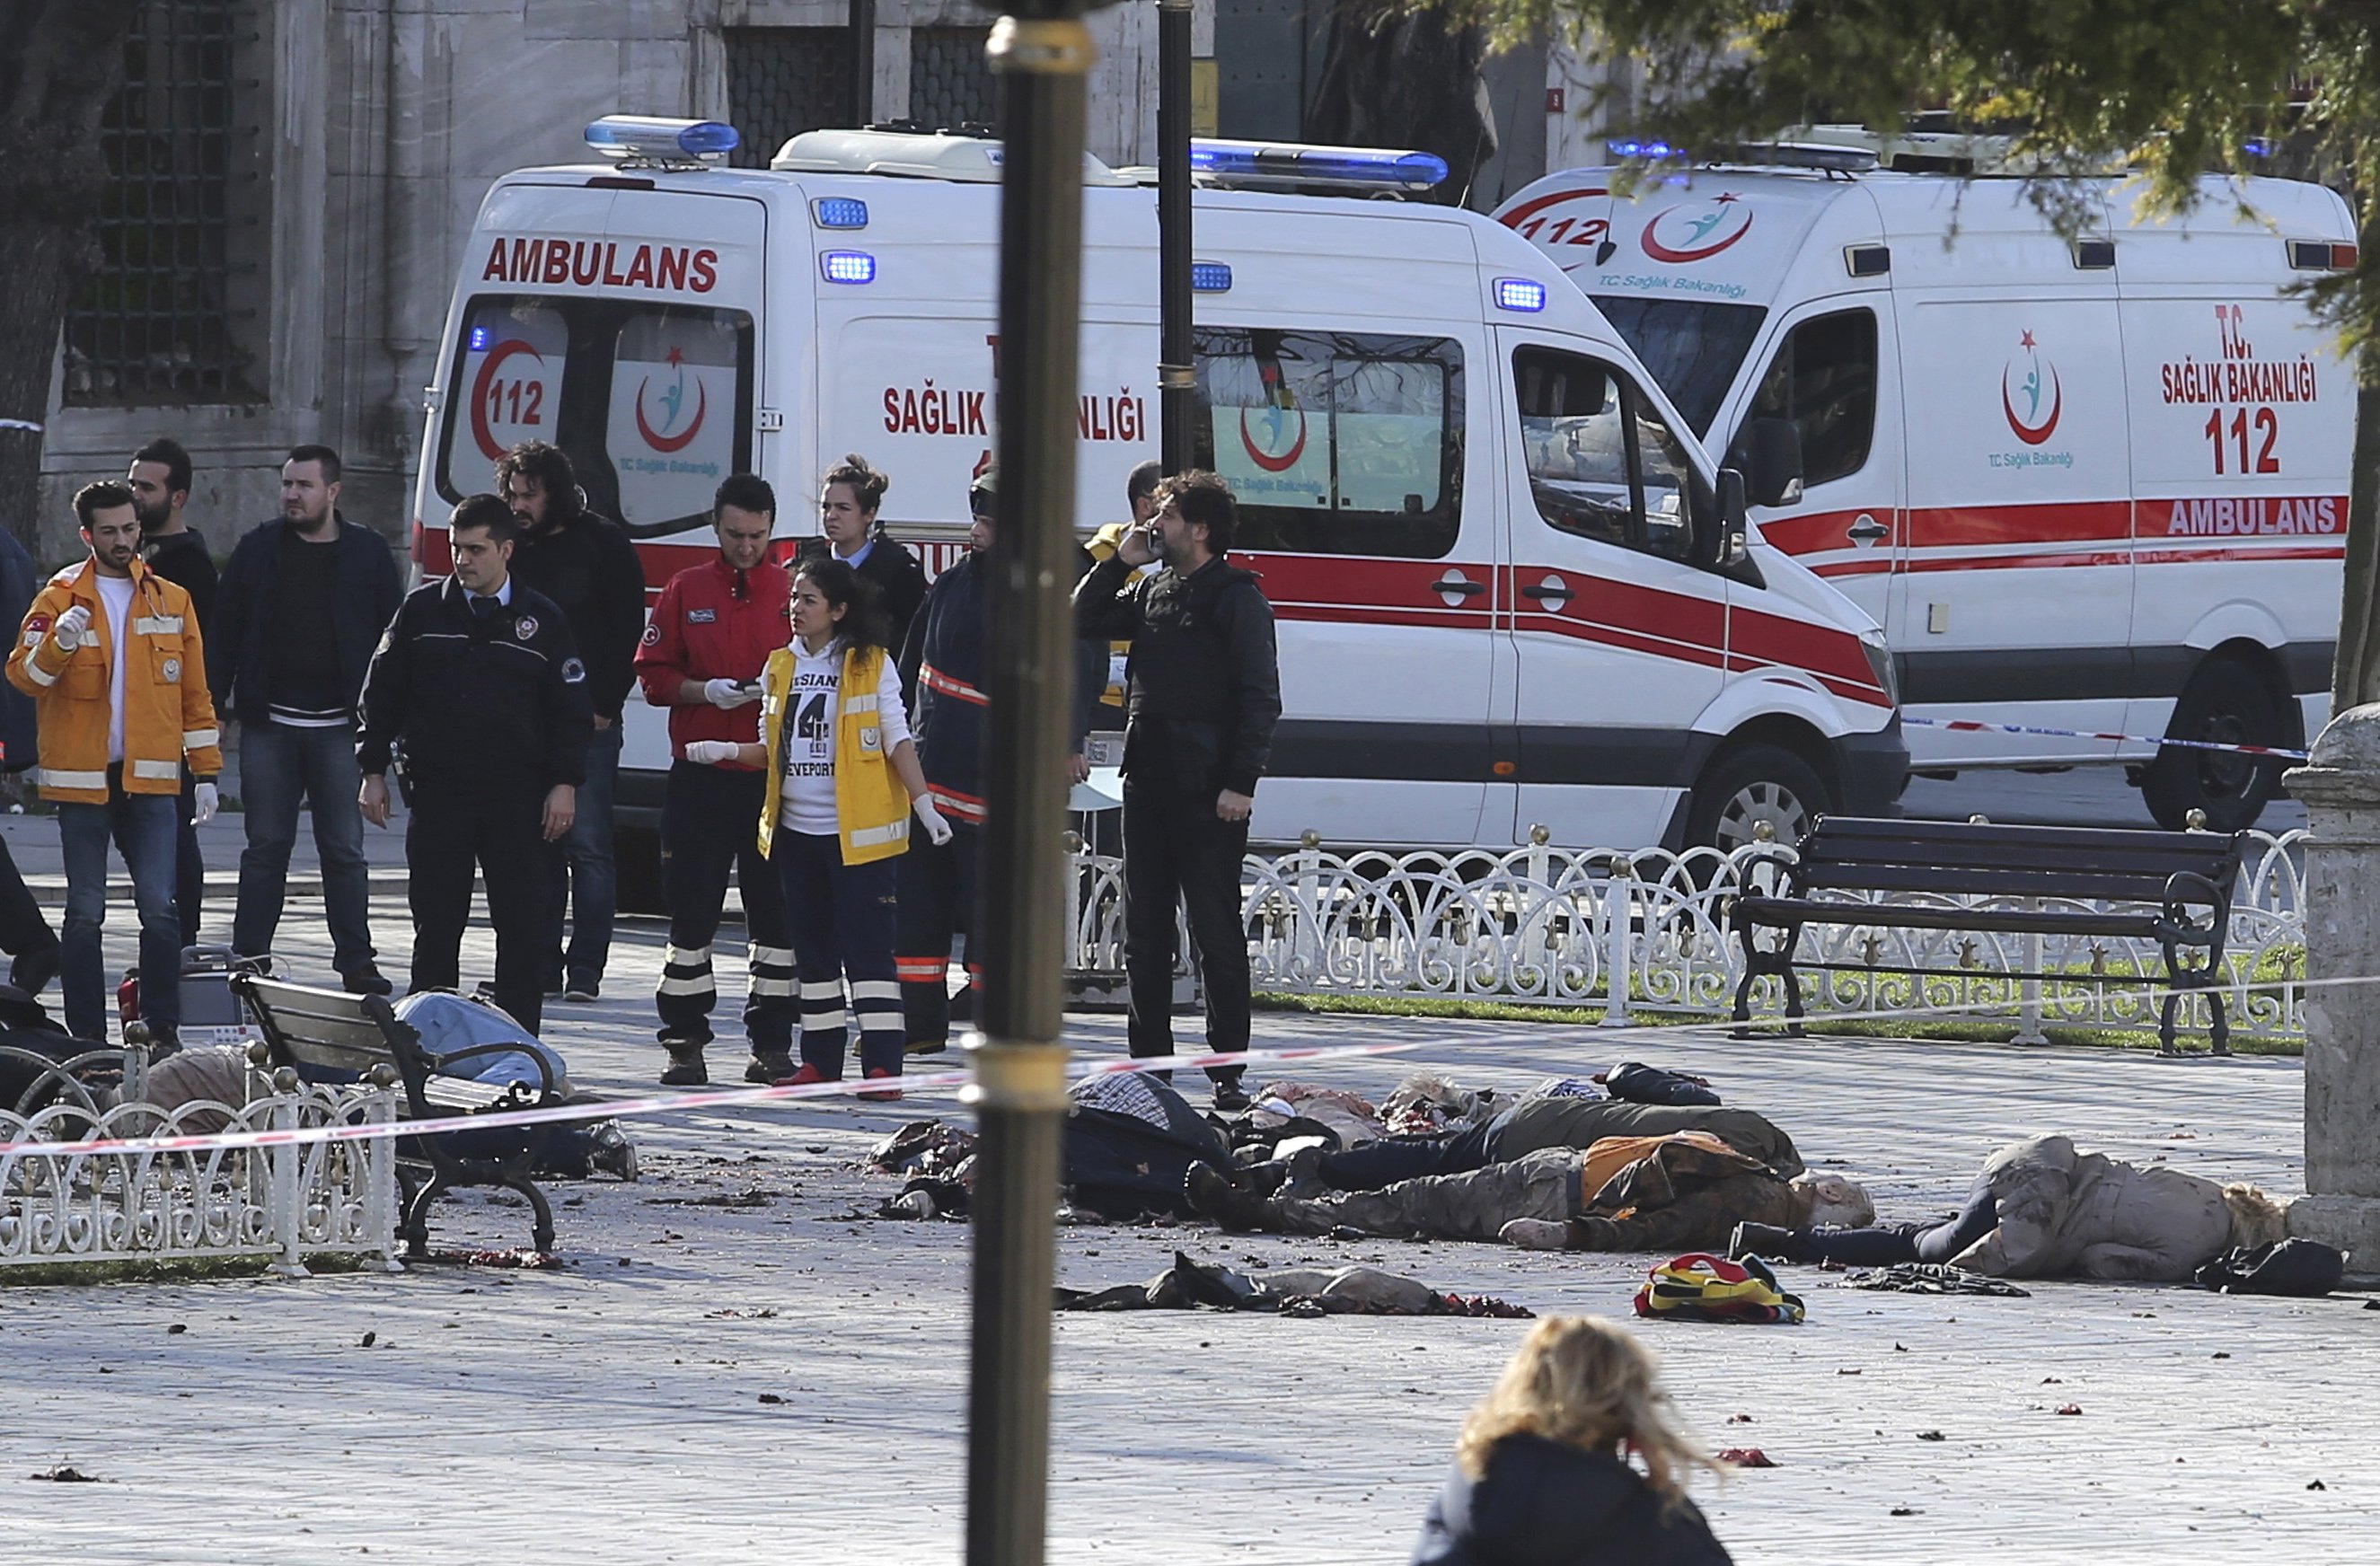 Τρομοκρατική επίθεση στην Κωνσταντινούπολη κοντά στην Αγία Σοφία με 10 νεκρούς και 15 τραυματίες – 28χρονος Σύρος ο δράστης